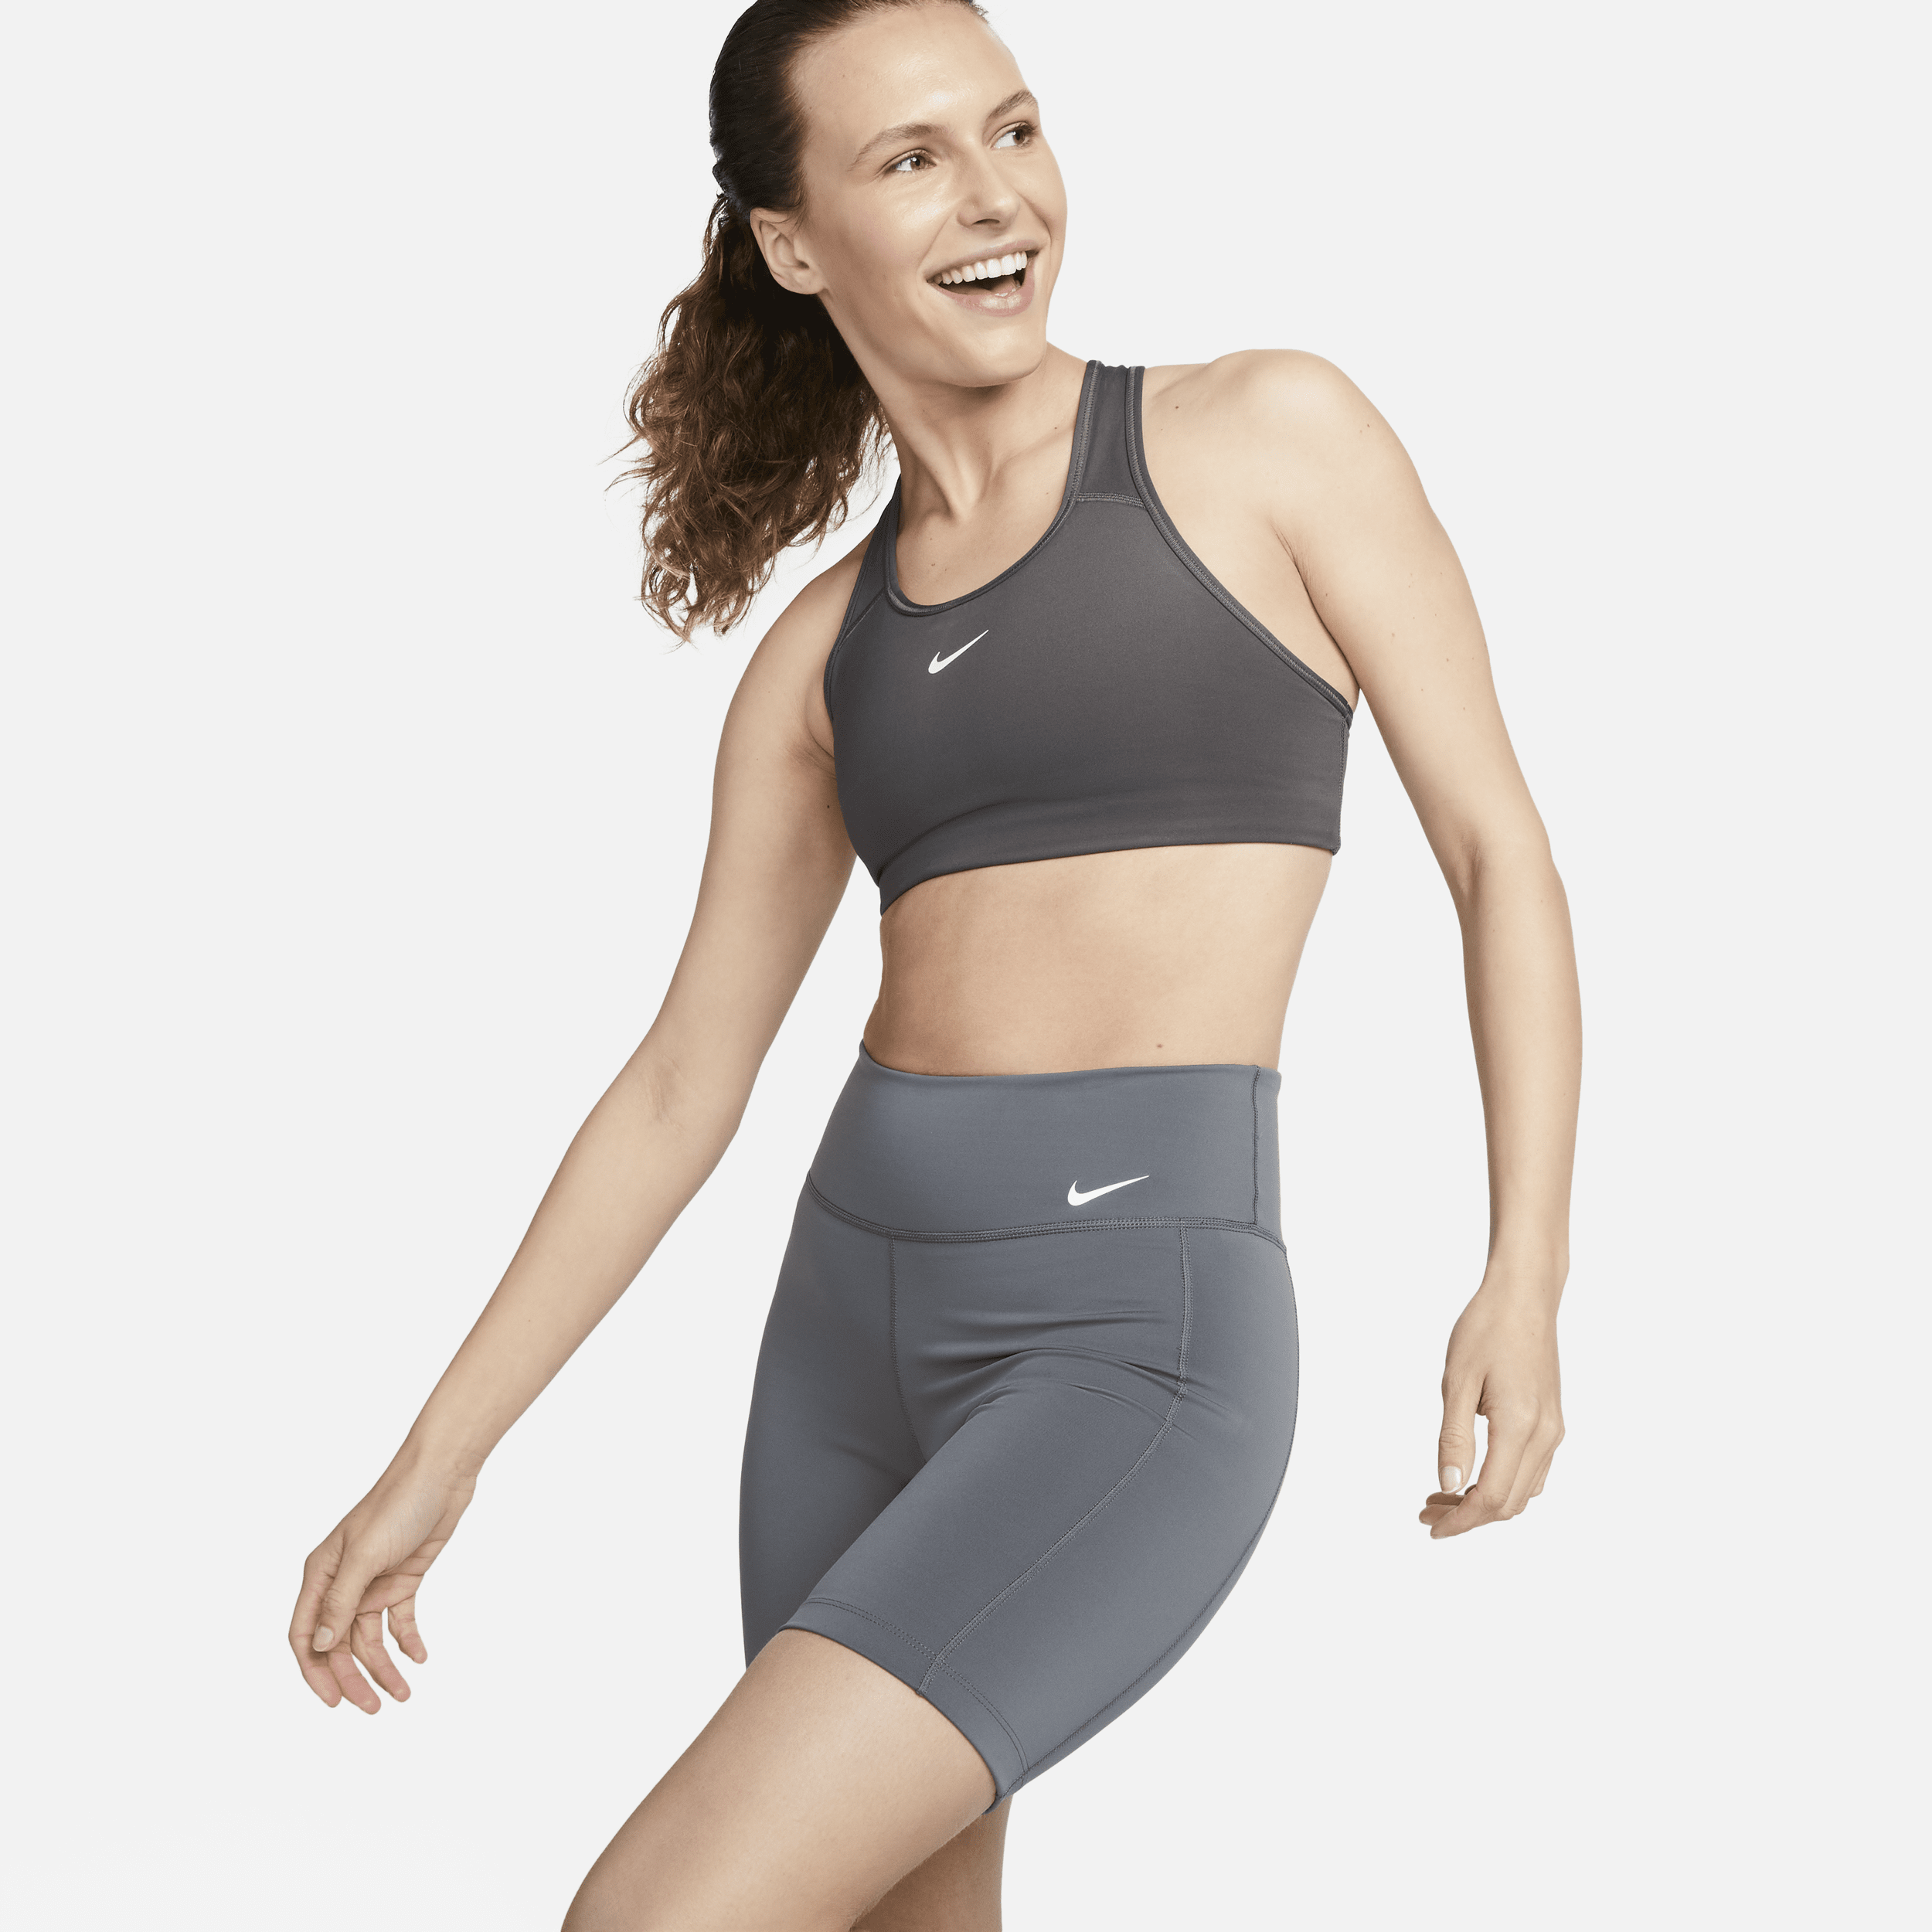 Shorts per il ciclo modello ciclista a vita media 18 cm Nike One Leak Protection – Donna - Grigio